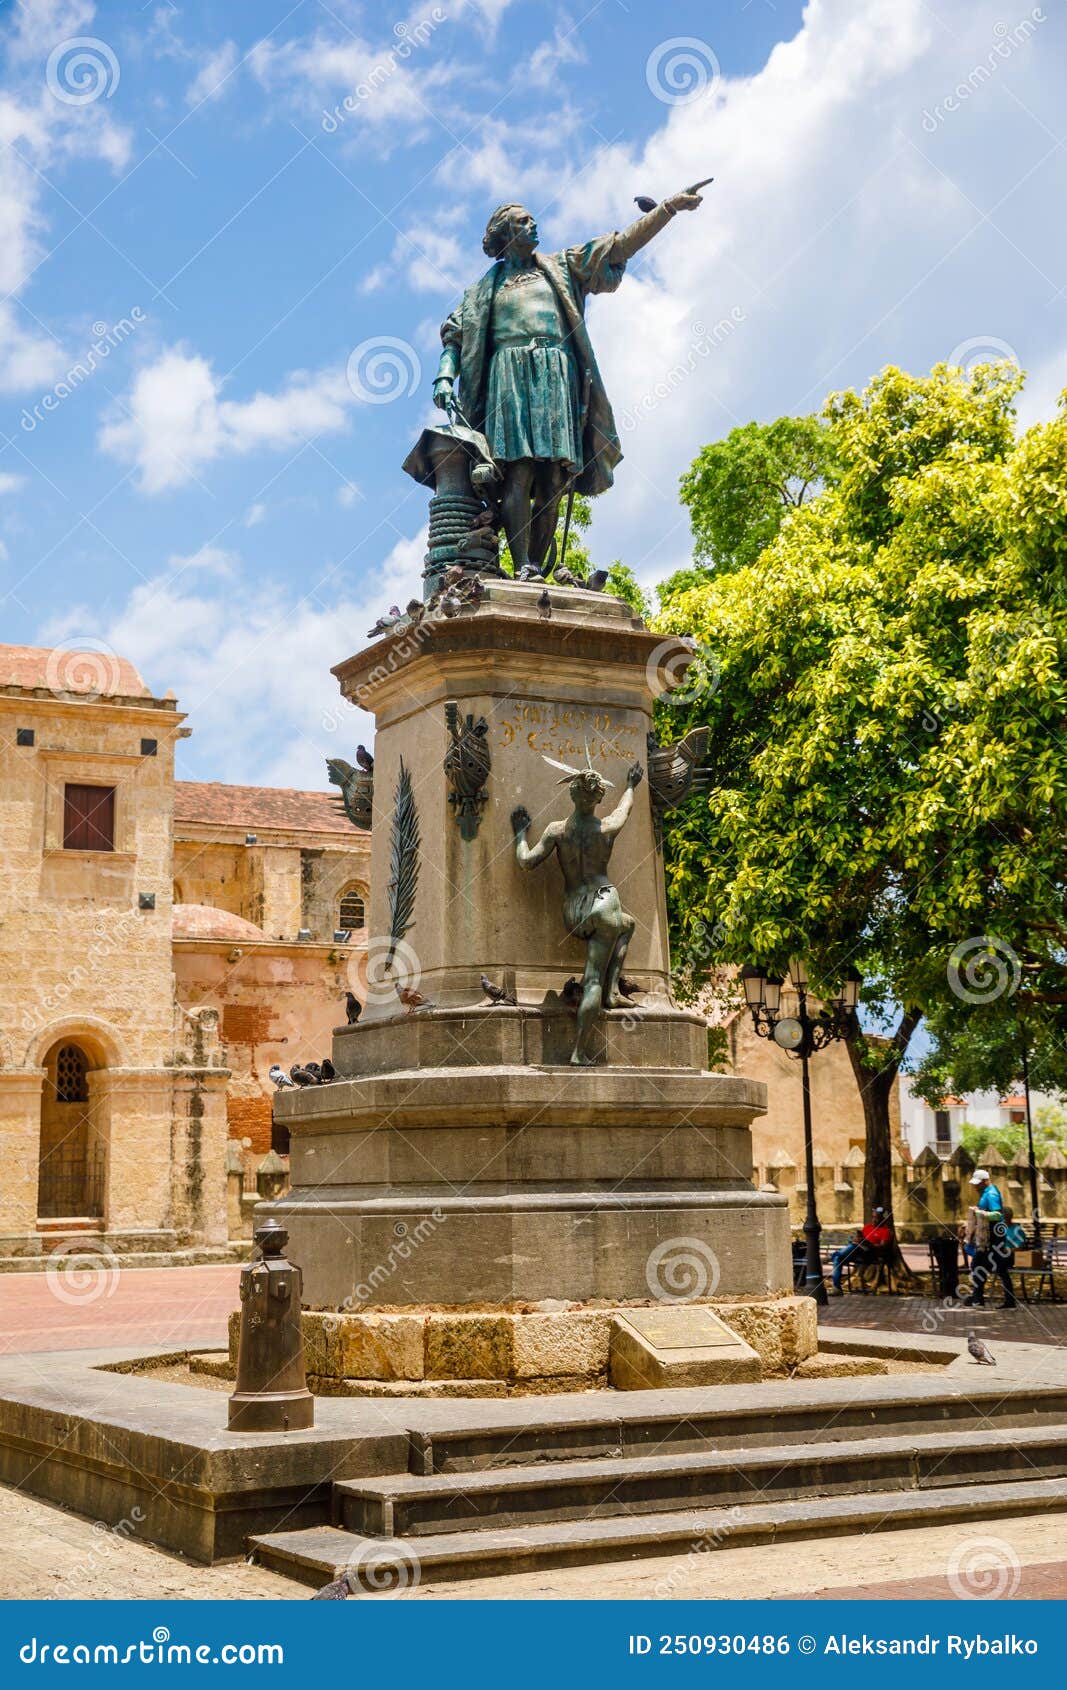 columbus statue and cathedral, parque colon, santo domingo. dominican republic.